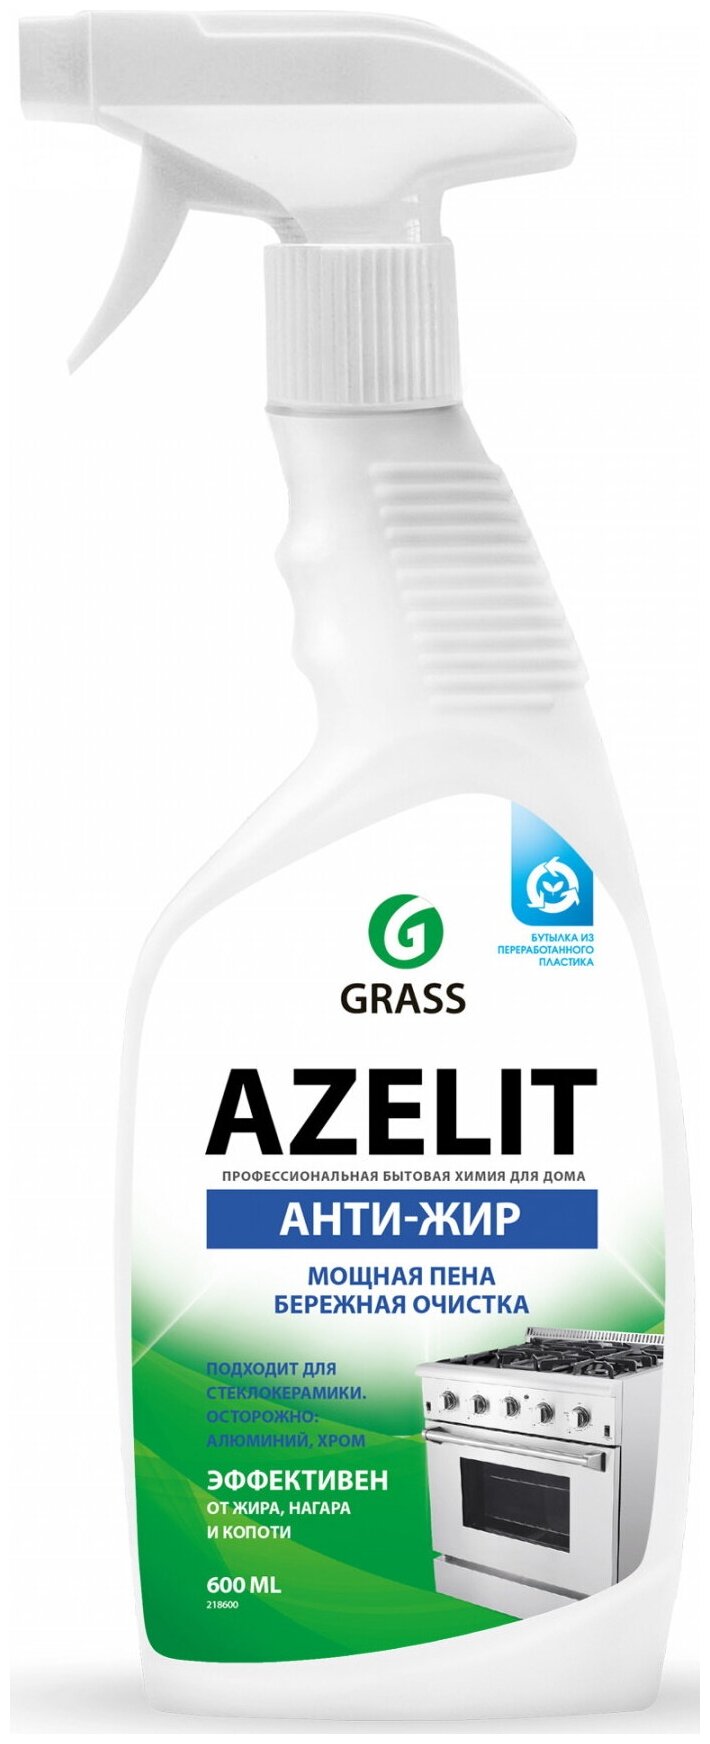 Чистящее средство для кухни Azelit GRASS Азелит антижир 1800мл (600мл х 3шт.) средство-жироудалитель набор для кухни